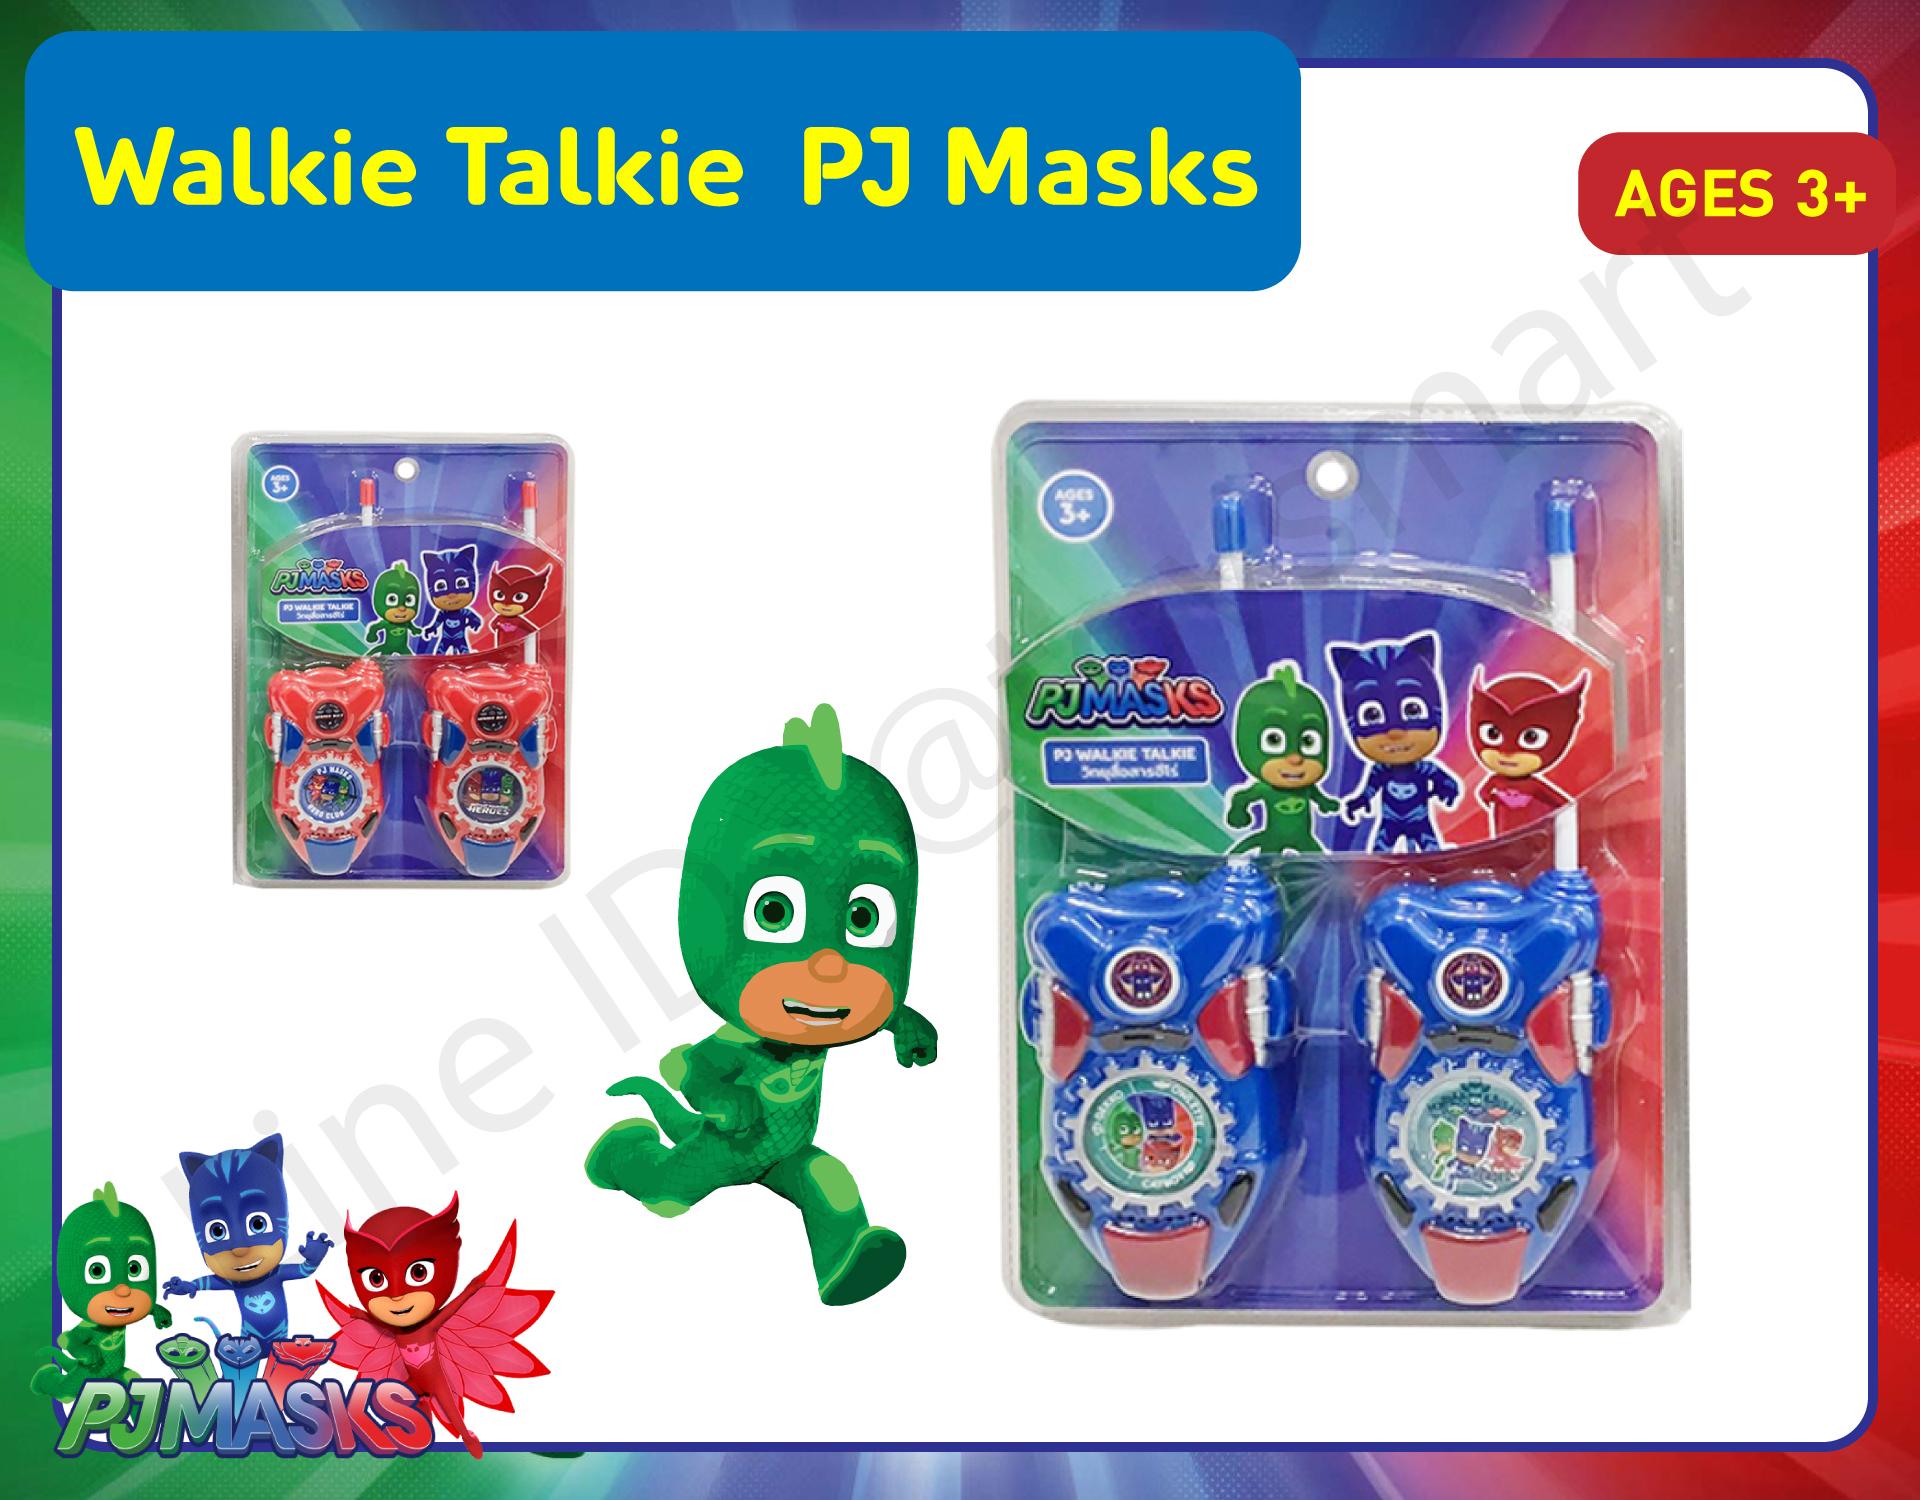 Walkie Talkie PJ Masks วิทยุสื่อสารสำหรับเด็ก วิทยุของเล่นเด็ก ฮีโร่รัติกาล สี น้ำเงิน